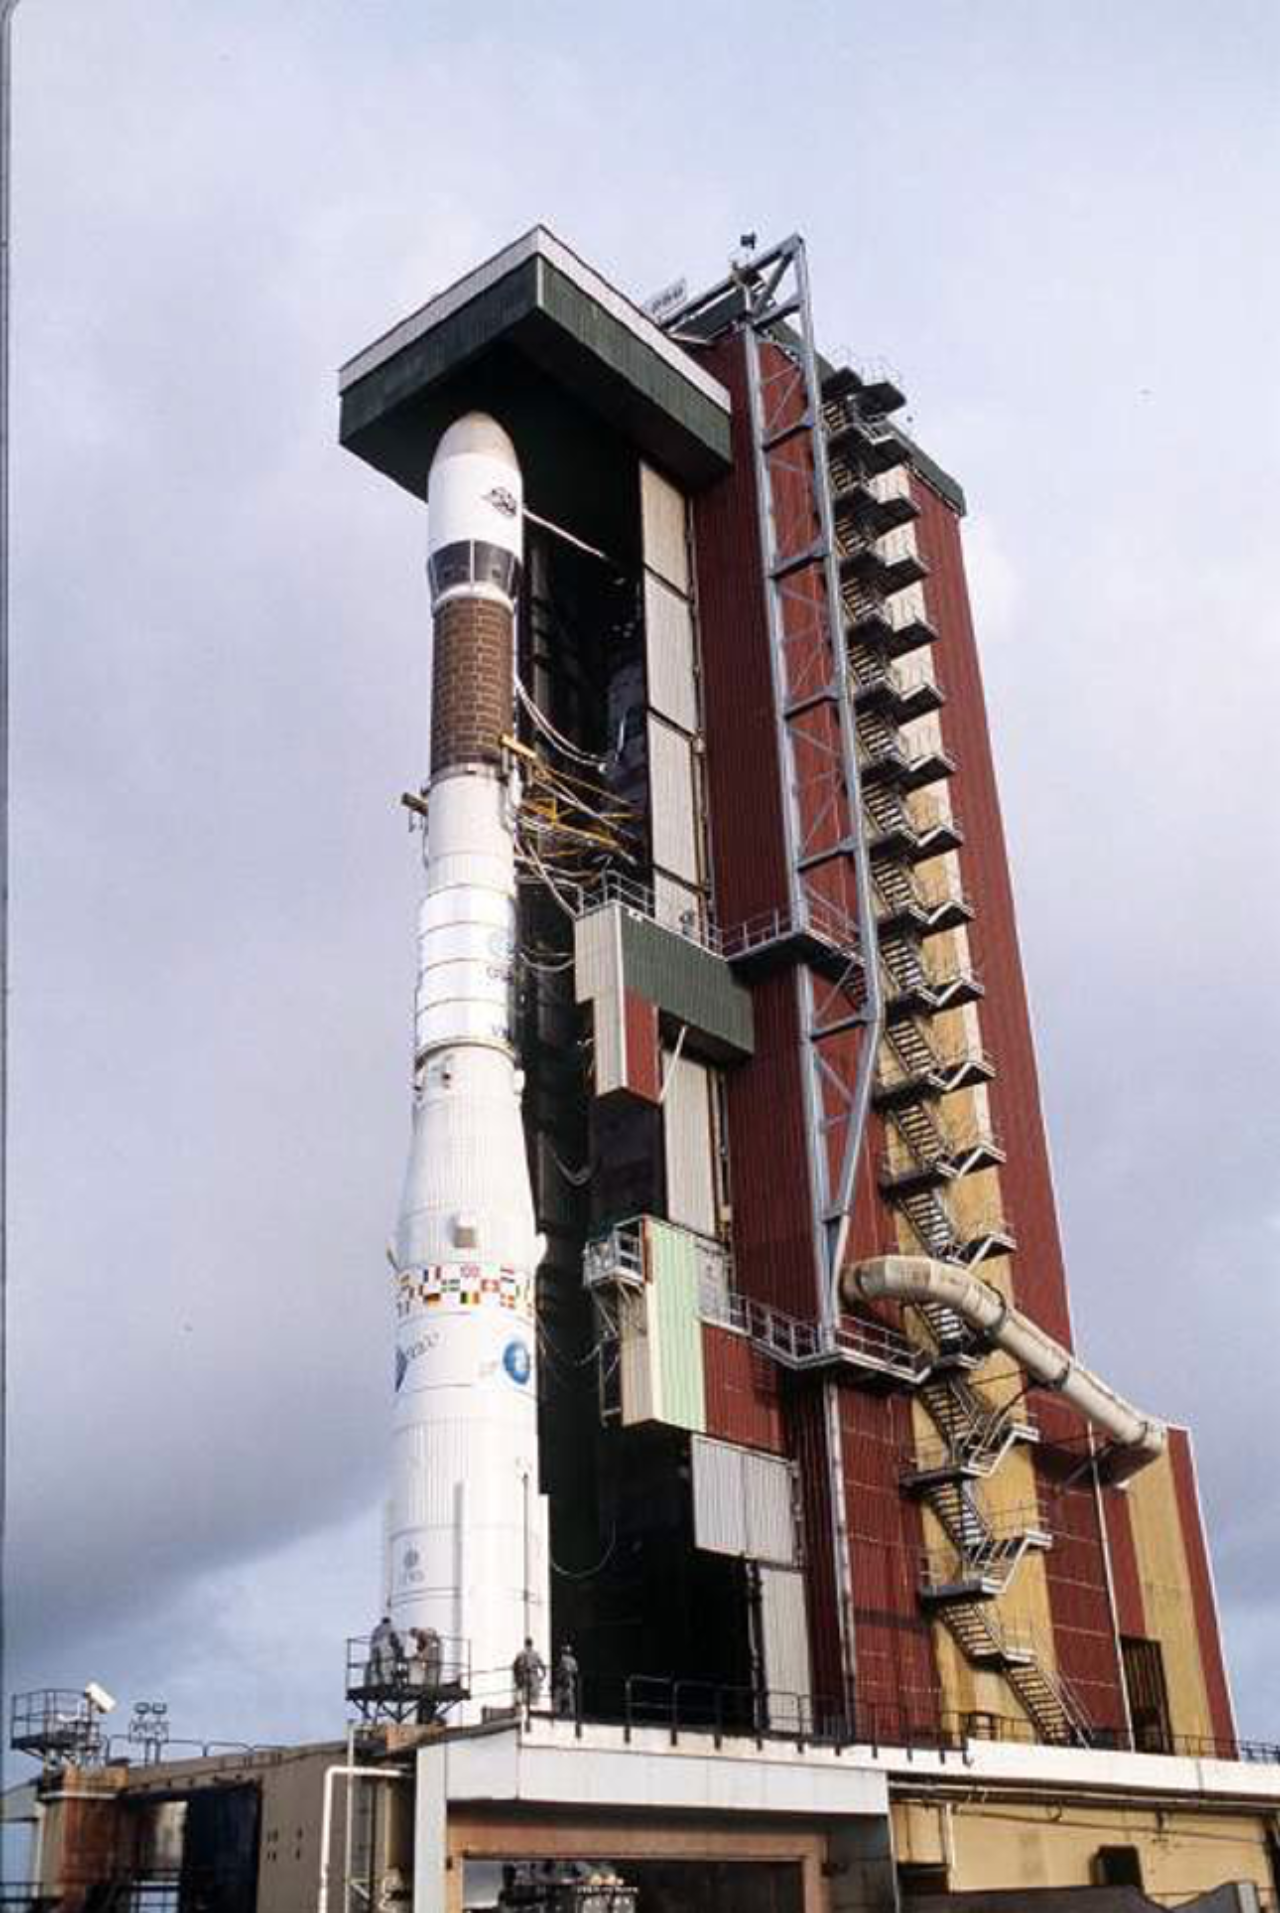 L’aventure d’Ariane 2 commence en 1986. Par la suite, cinq autres lancements prennent leur envol depuis Kourou en Guyane française, tous couronnés de succès.